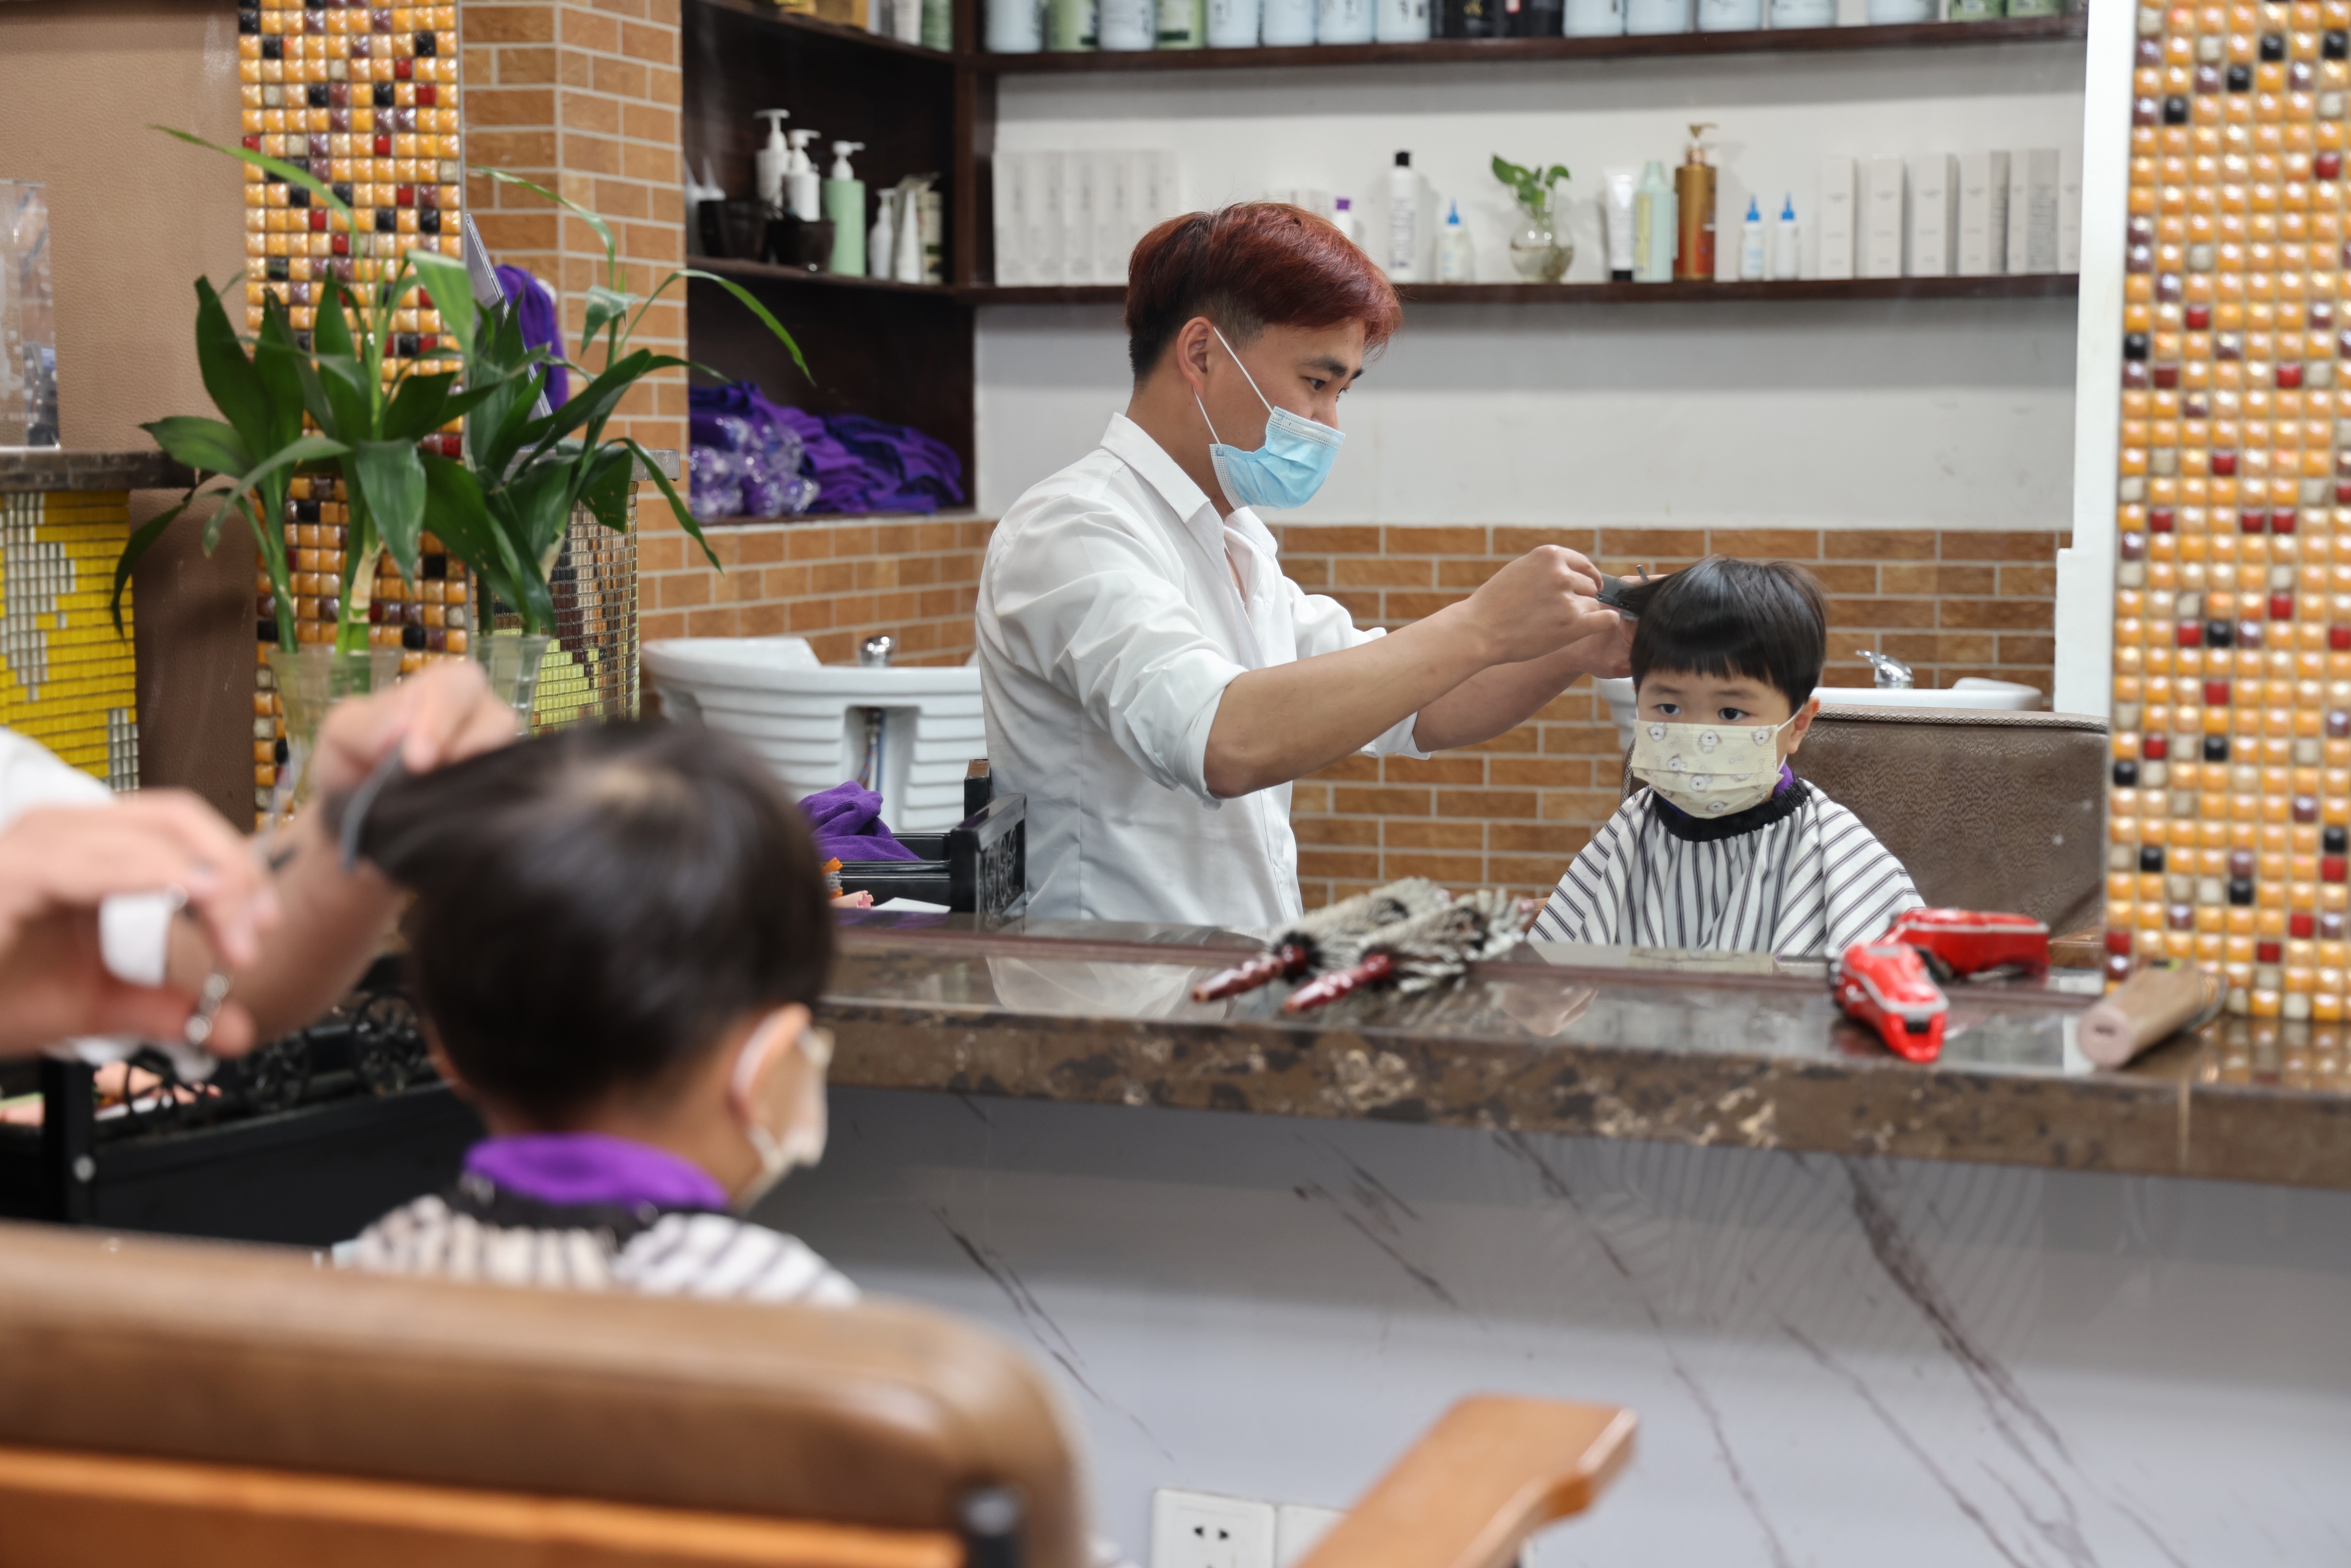 上海金山区朱泾镇的理发店16日恢复营业,小朋友来理发 